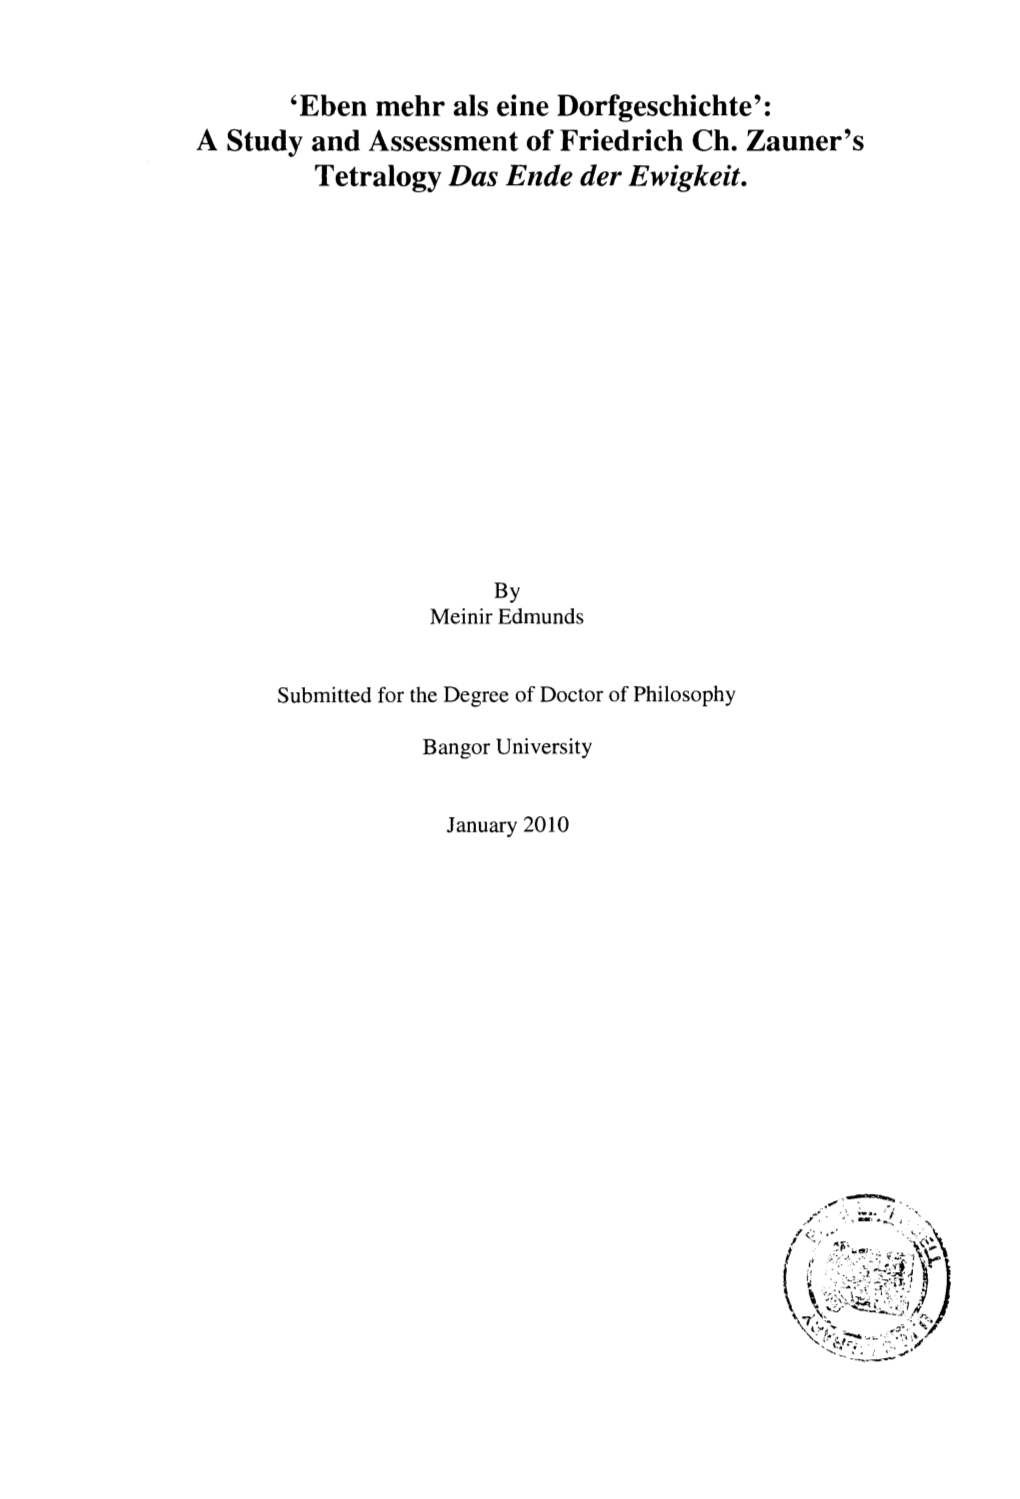 A Study and Assessment of Friedrich Ch. Zauner's Tetralogy Das Ende Der Ewigkeit